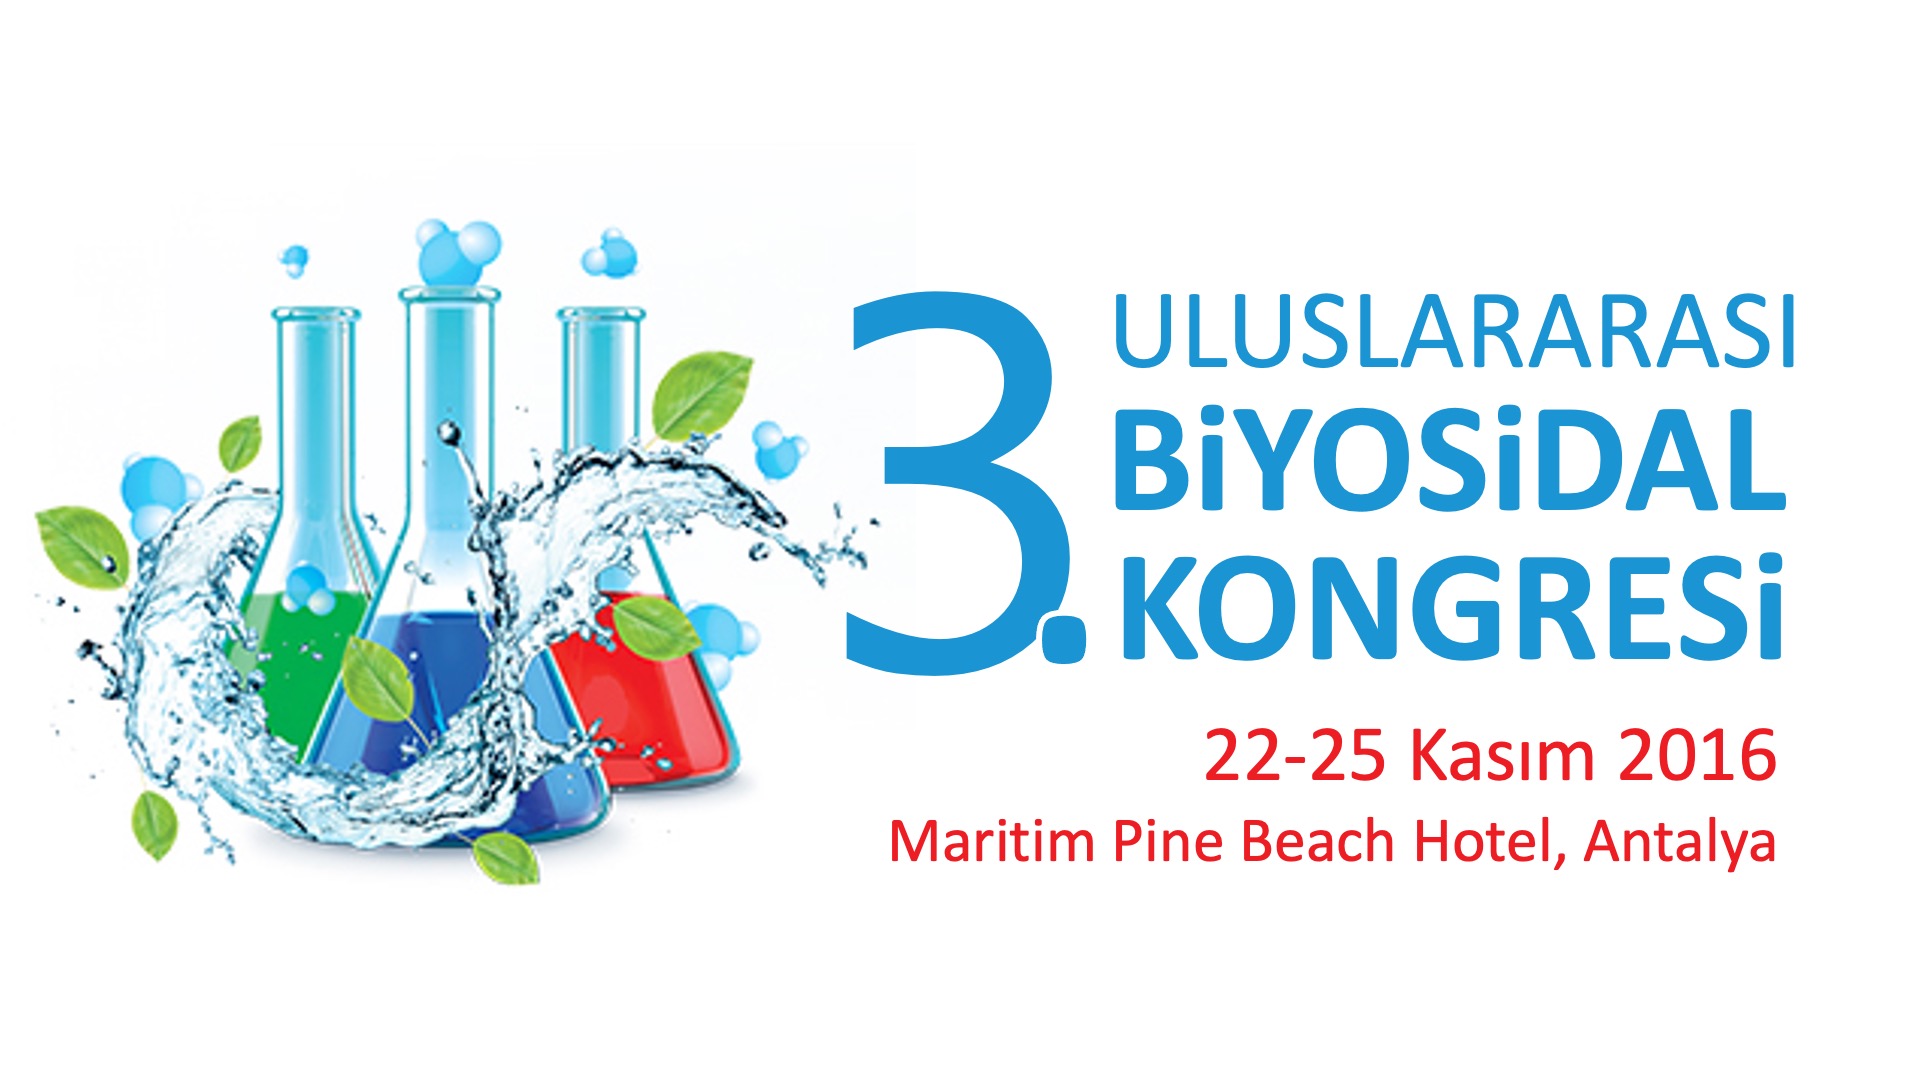 3. Uluslararası Biyosidal Kongresi 22-25 Kasım 2016